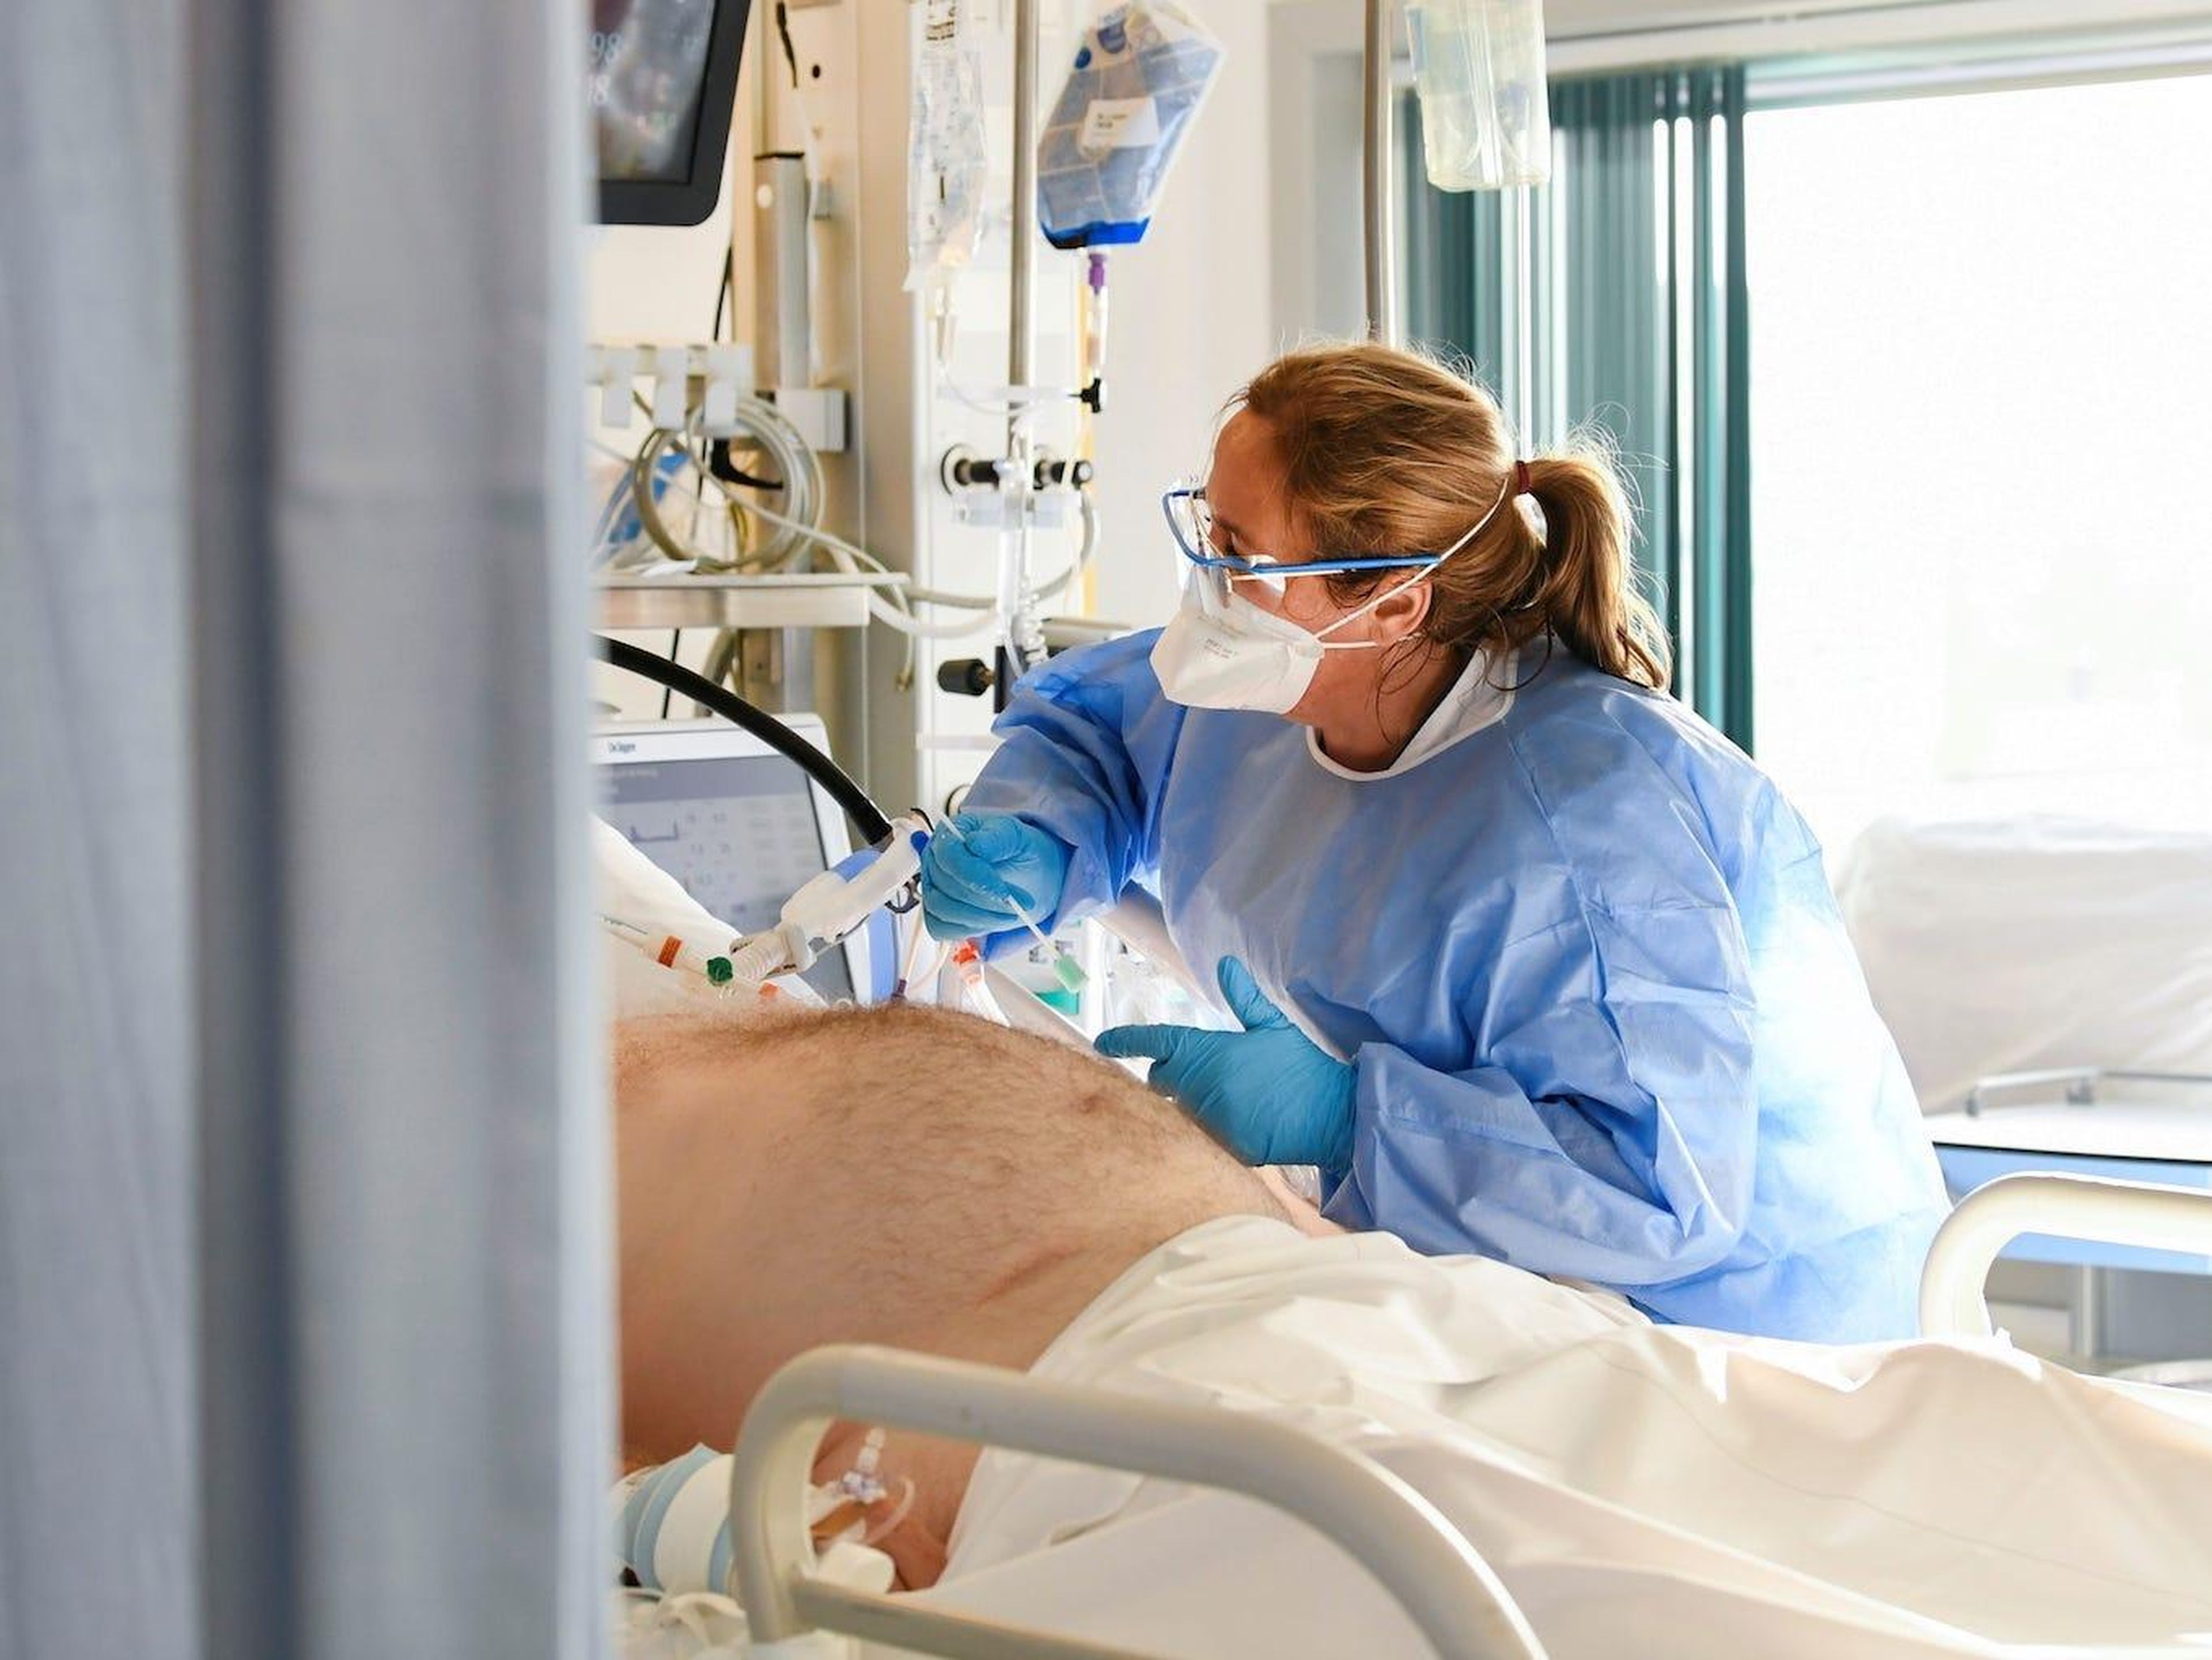 Un miembro del personal médico con un traje de protección completa es visto mientras trata a un paciente infectado con COVID-19 en la unidad de cuidados intensivos del Hospital UMC+ de Maastricht, Holanda, el 10 de noviembre de 2020.